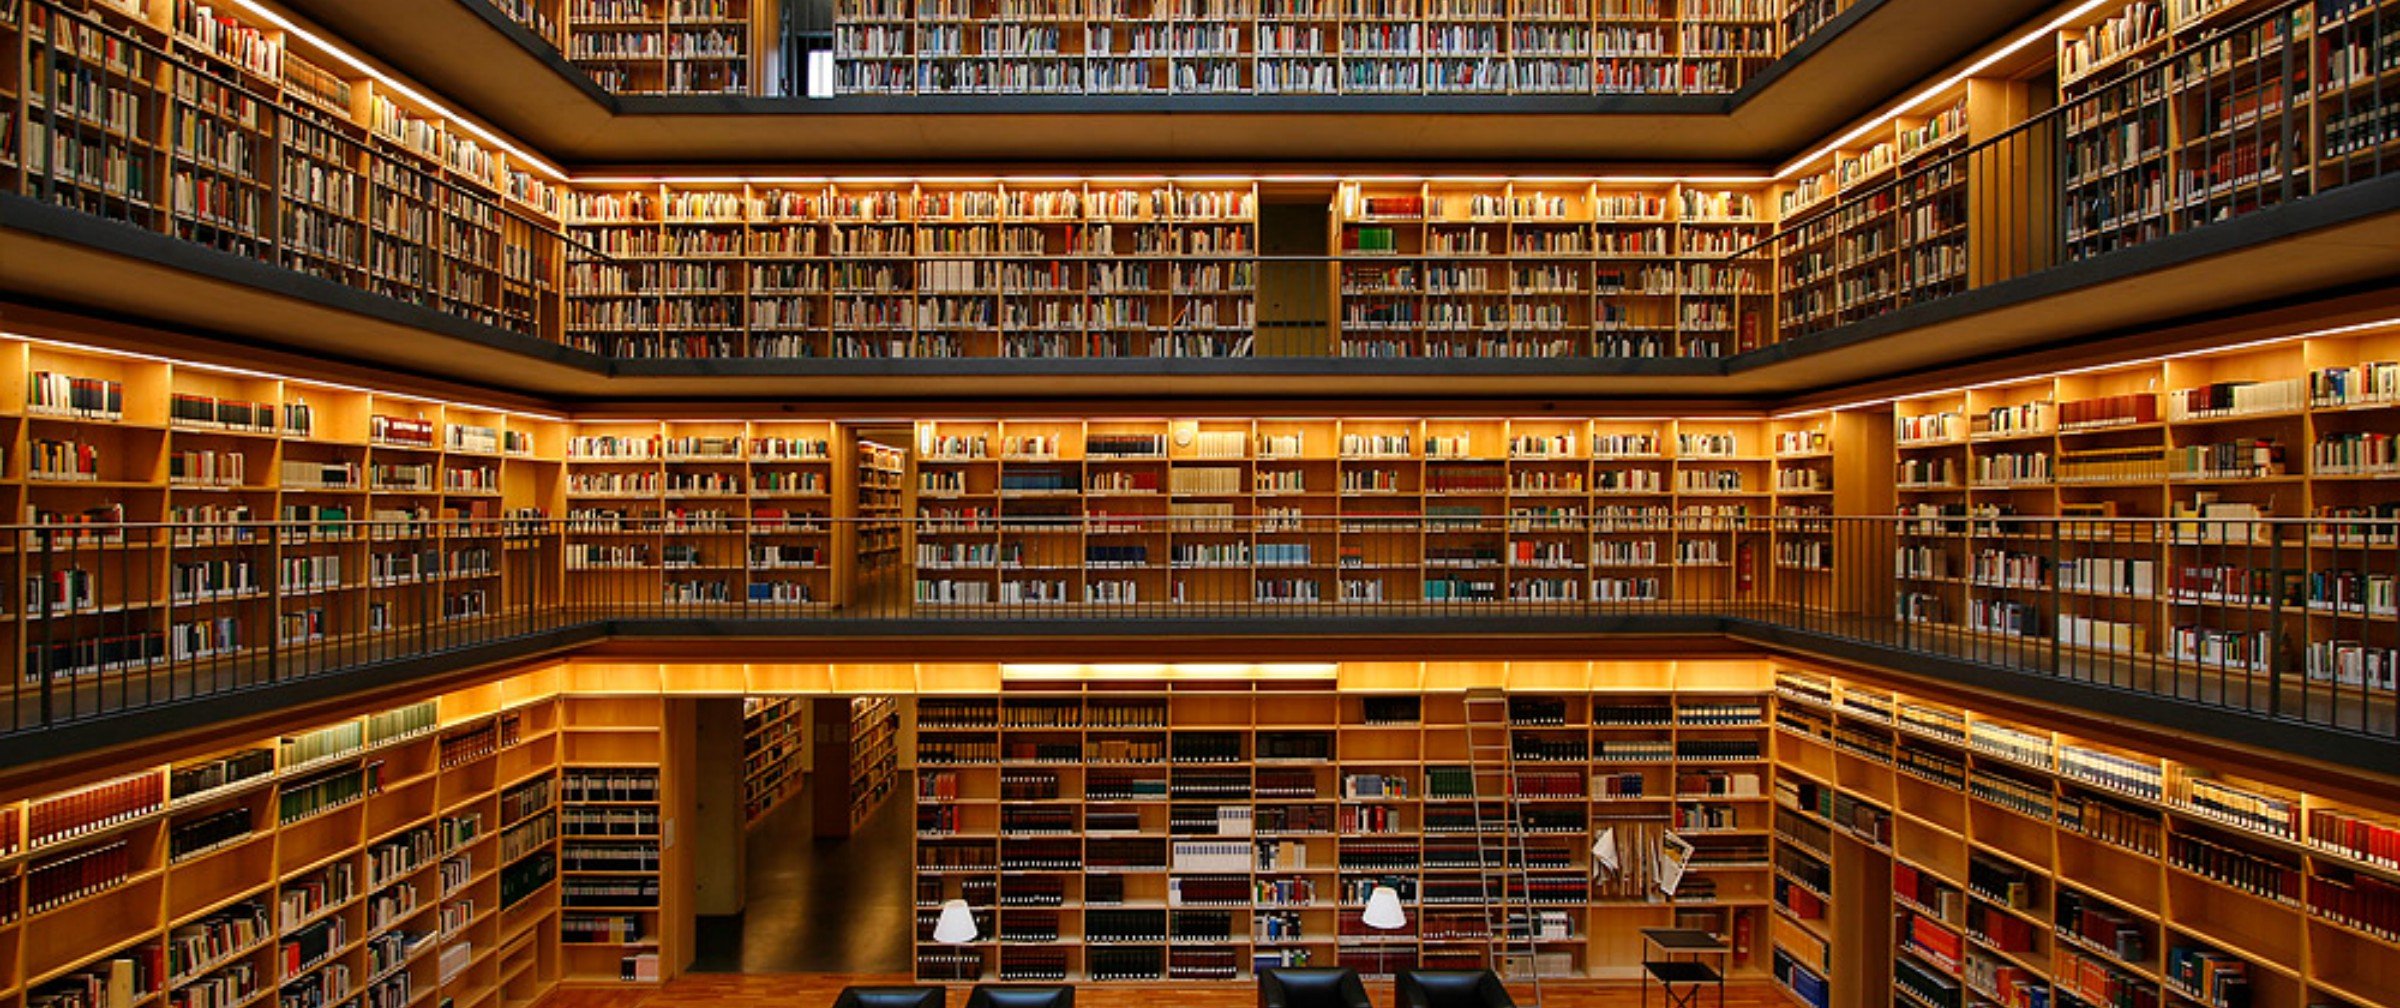 Большая библиотека номеров. 19-Ярусное книгохранилище РГБ. Библиотека Phillips Exeter. Красивая библиотека. Большая библиотека.